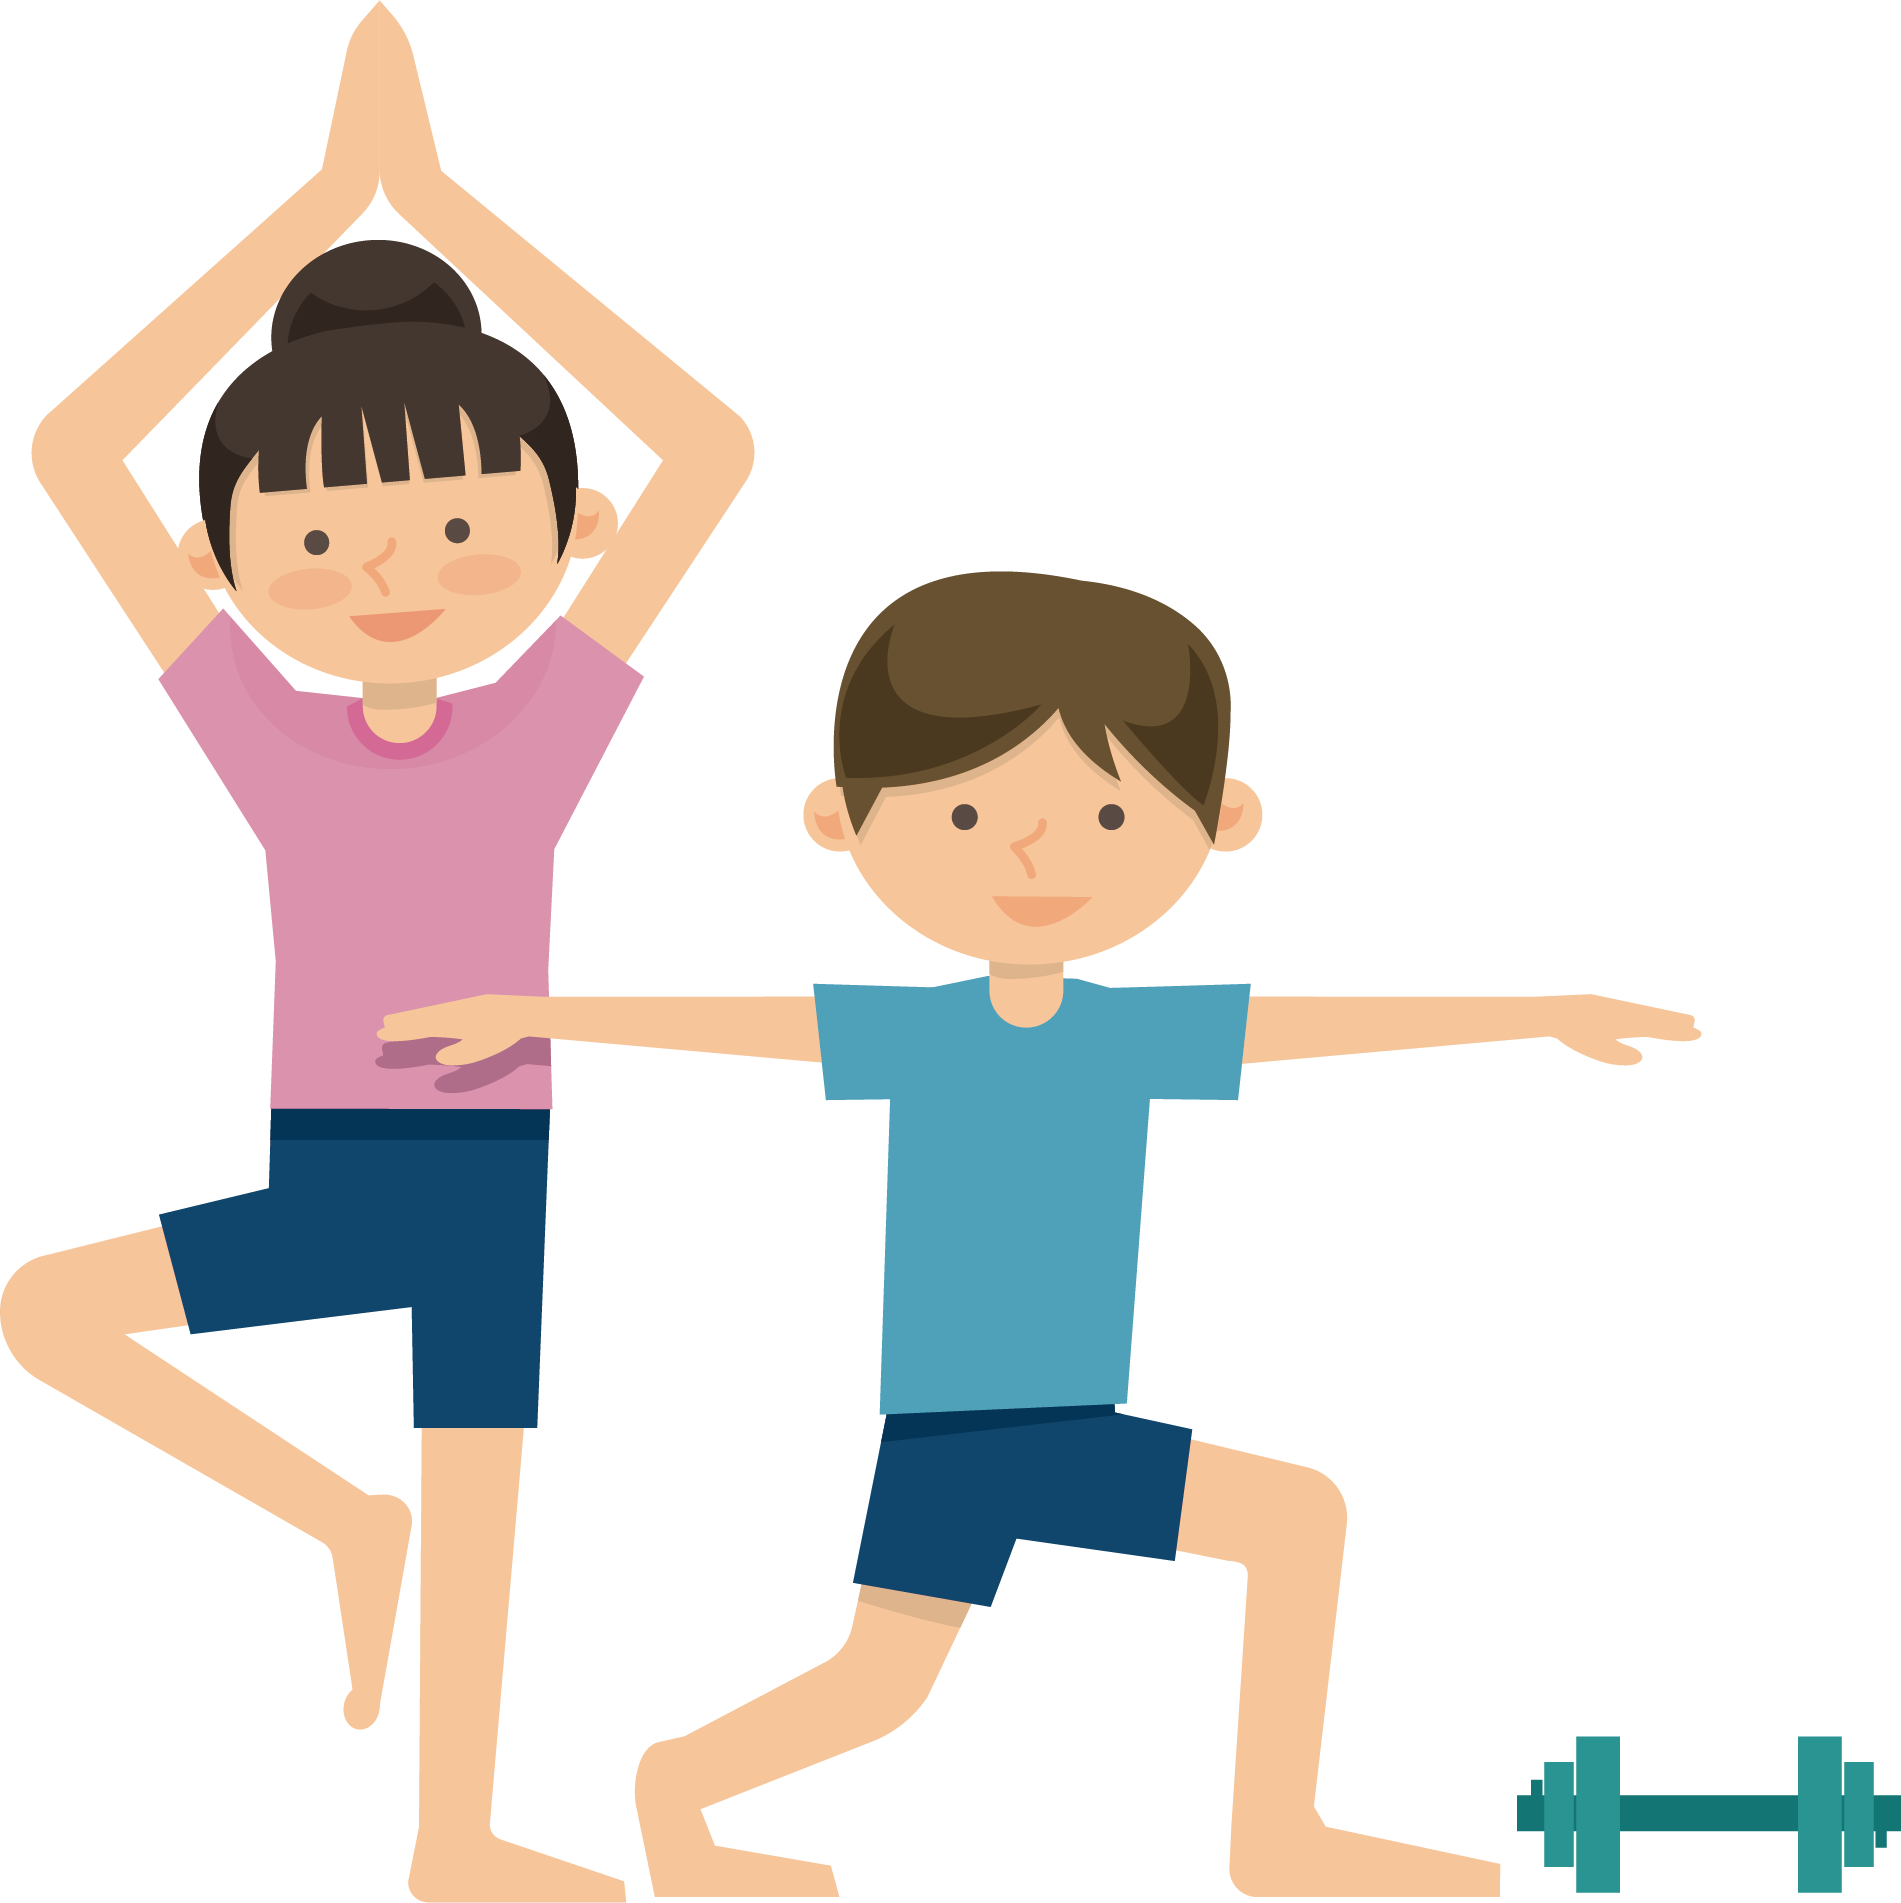 Do exercises picture. Физические упражнения мультяшные. Спортивные движения для детей. Зарядка для детей. Физические упражнения рисунки.